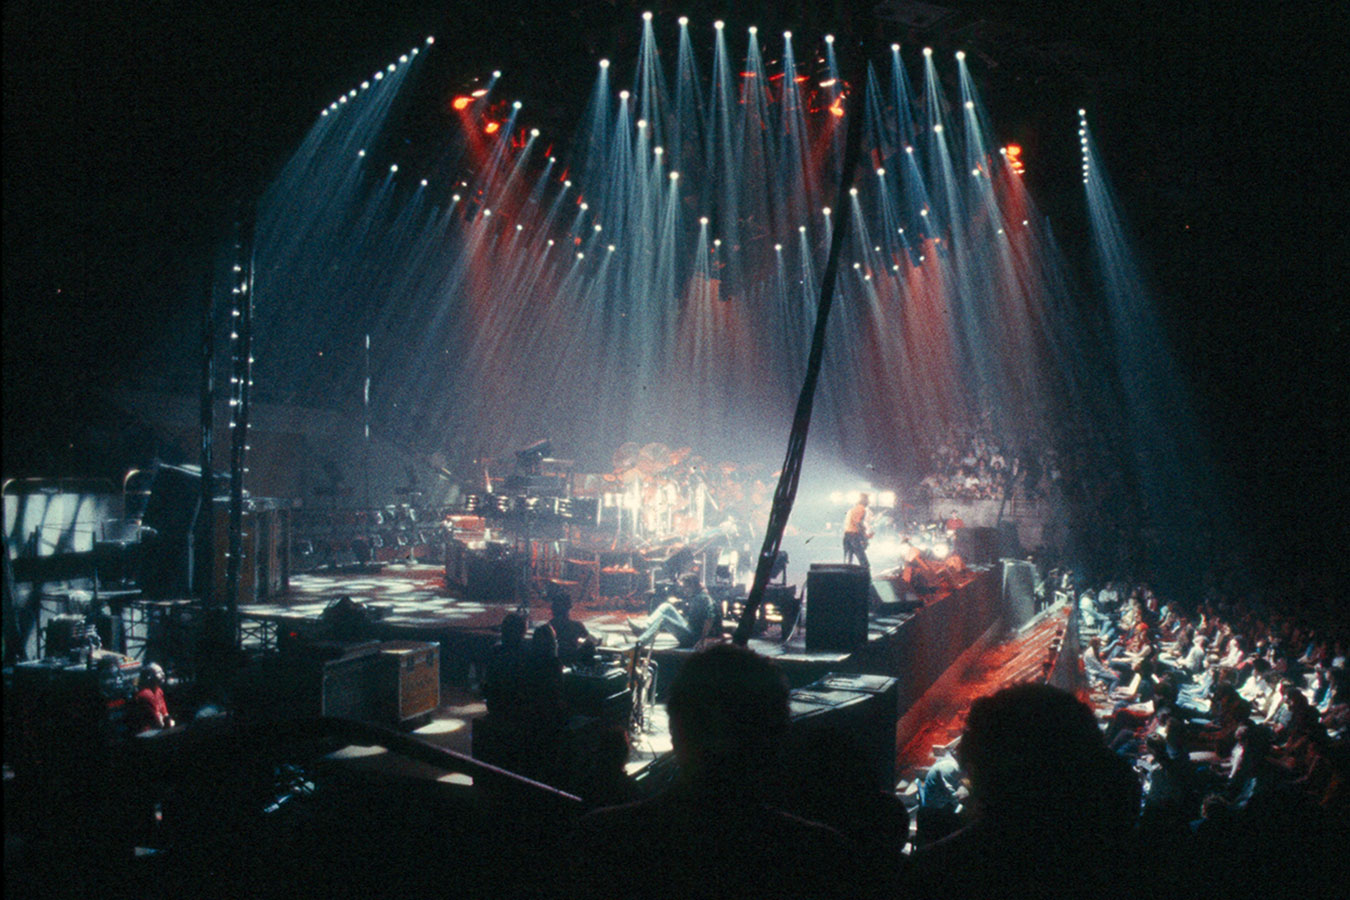 Genesis live in concert